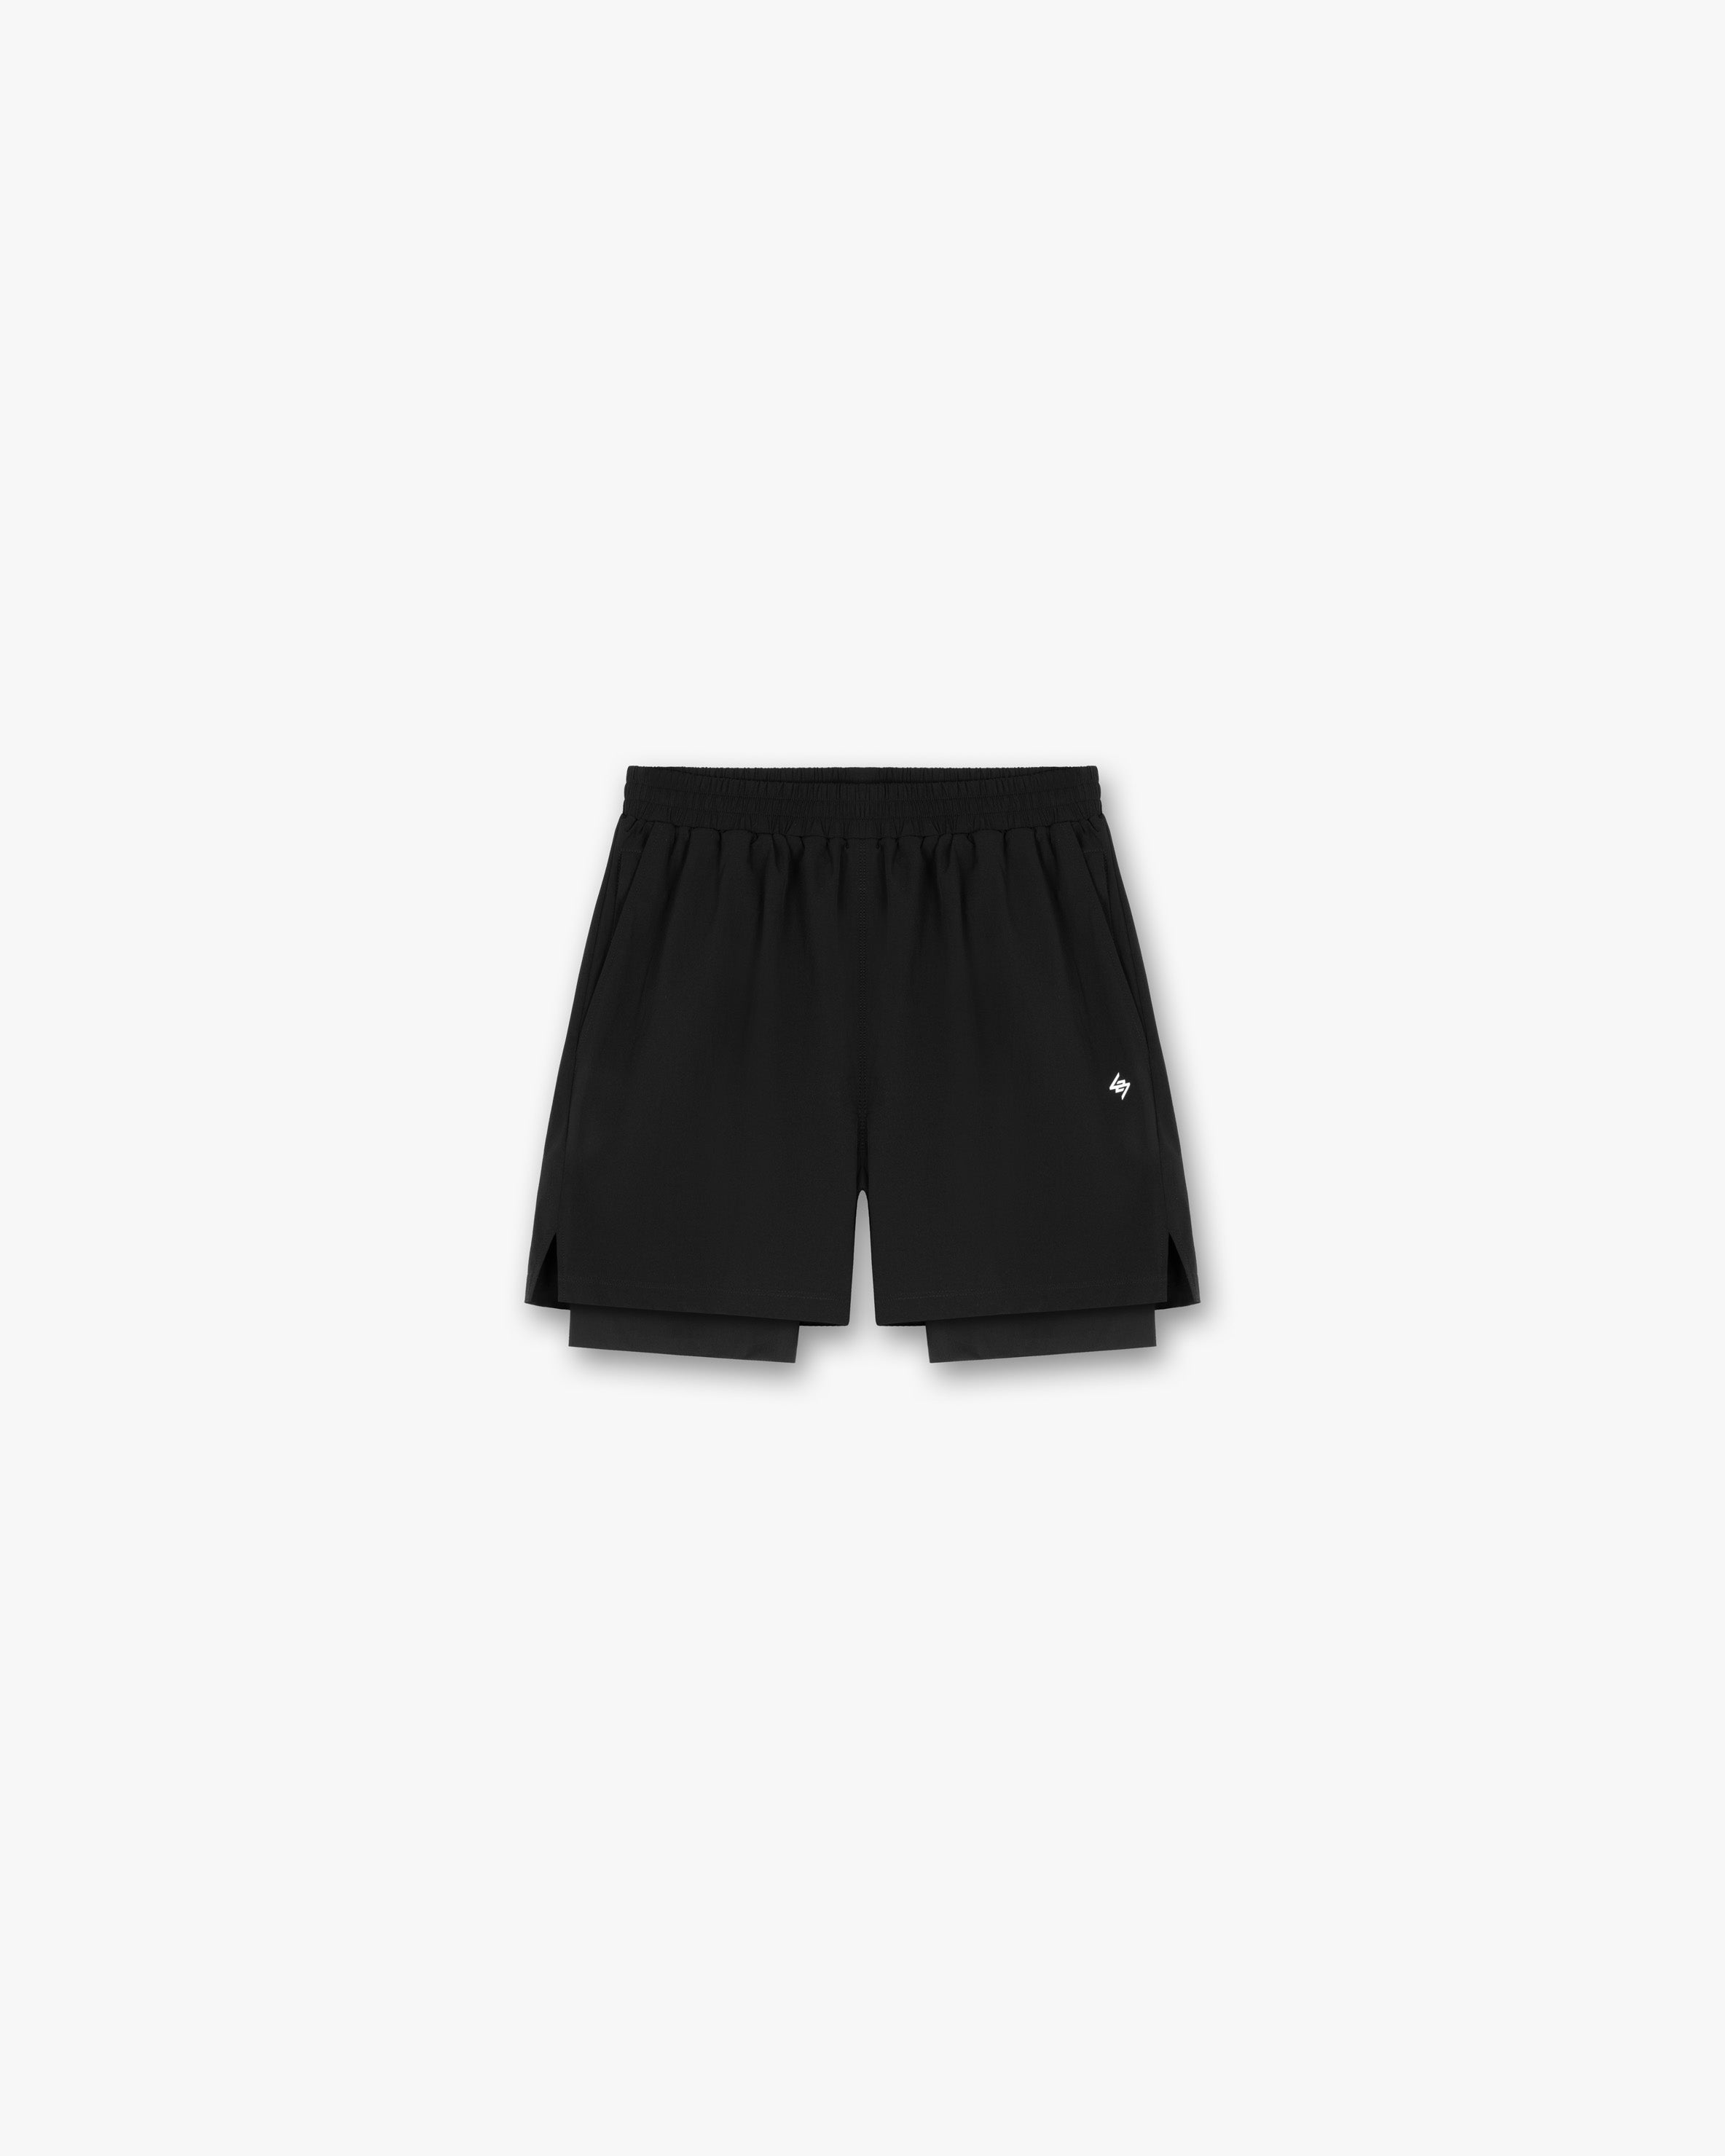 247 2-In-1 Shorts - Black 